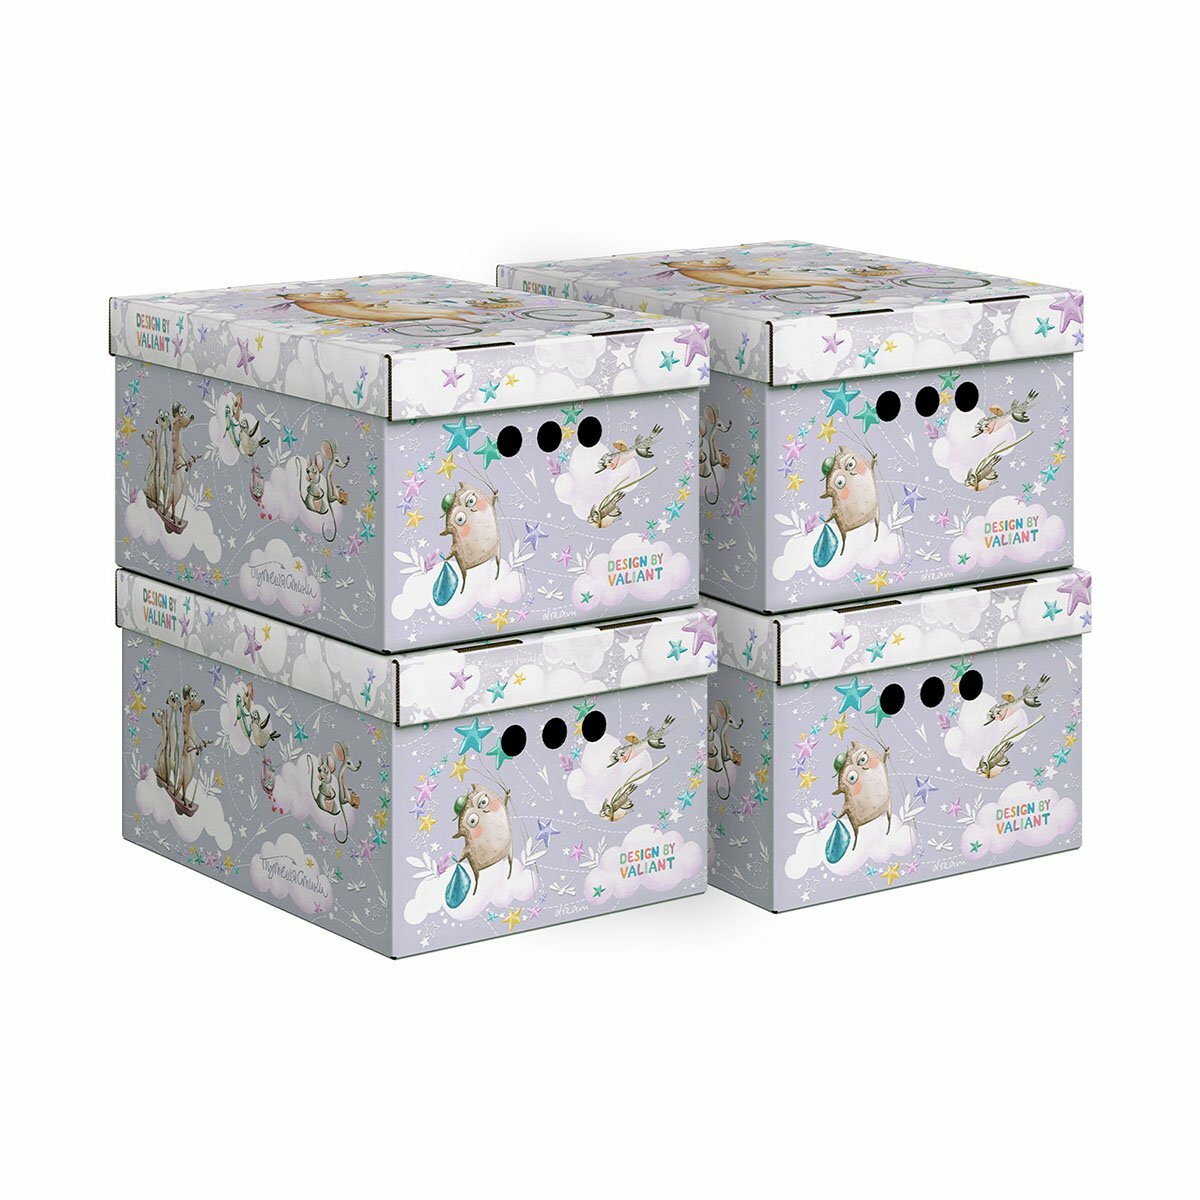 Коробка для хранения Valiant Путешастики, складная, 25 x 33 x 18,5 см, фиолетовая, набор 4 шт